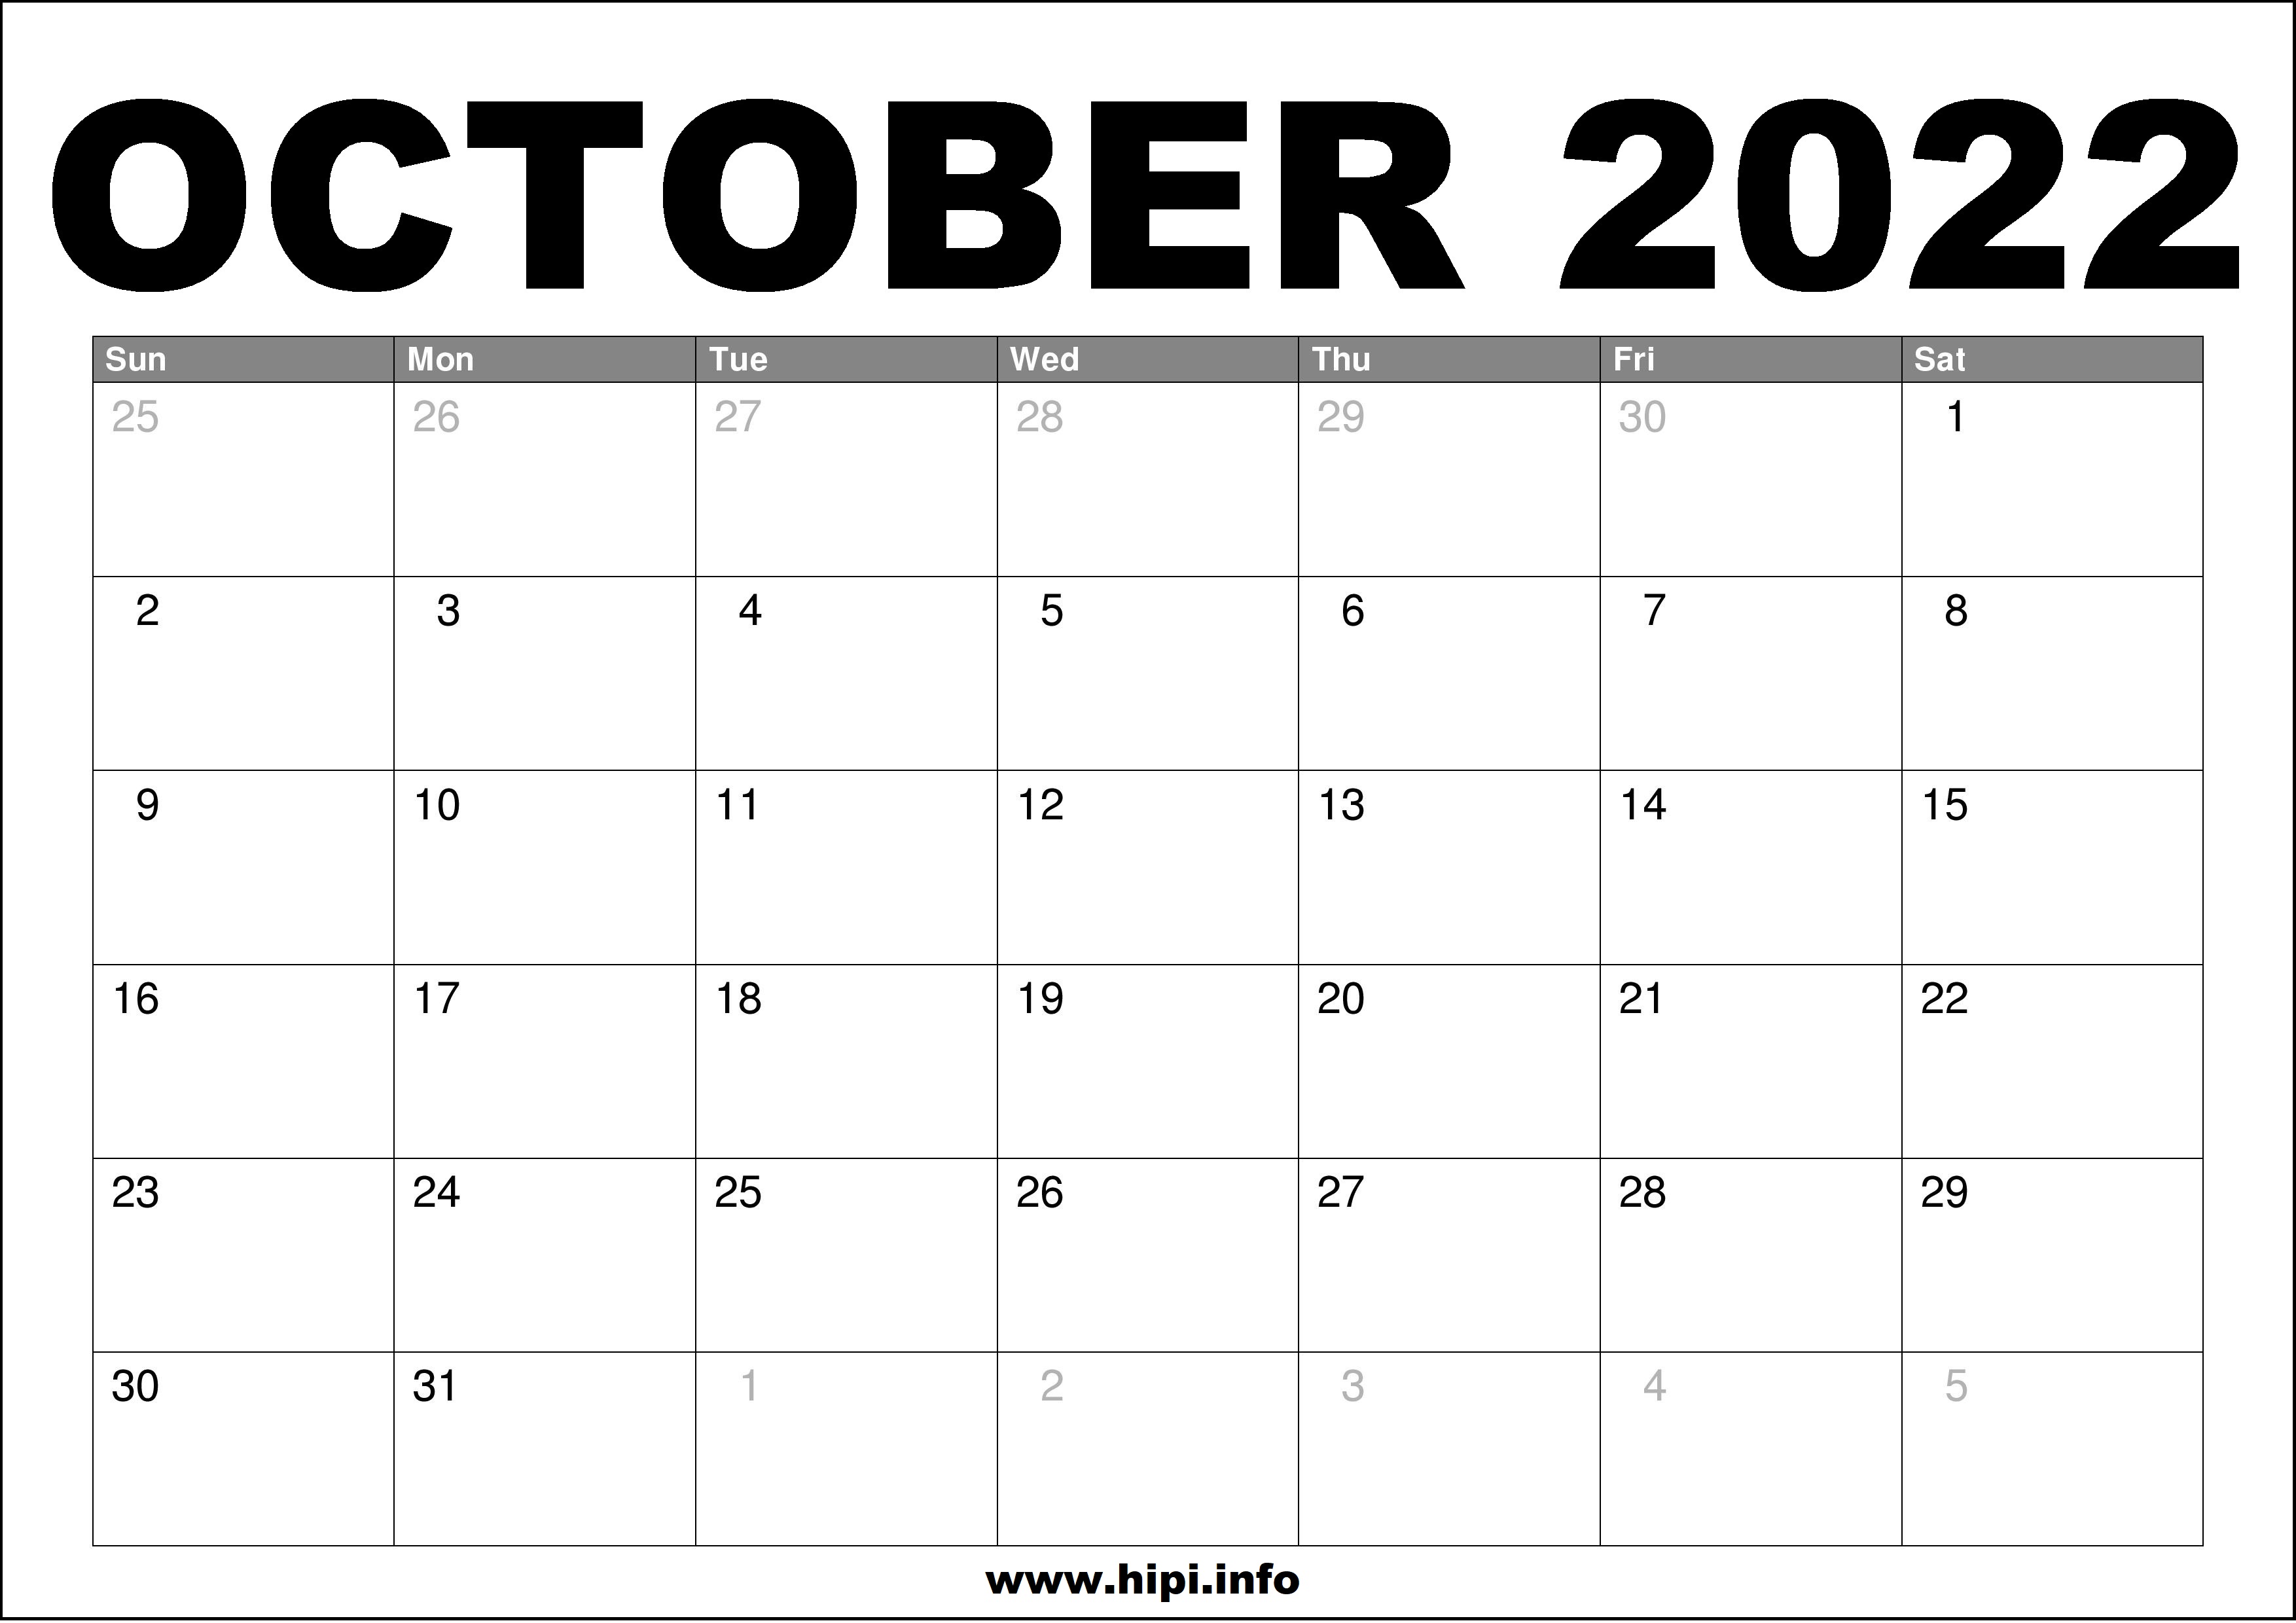 October Month Calendar 2022 October 2022 Calendar Printable Free - Hipi.info | Calendars Printable Free